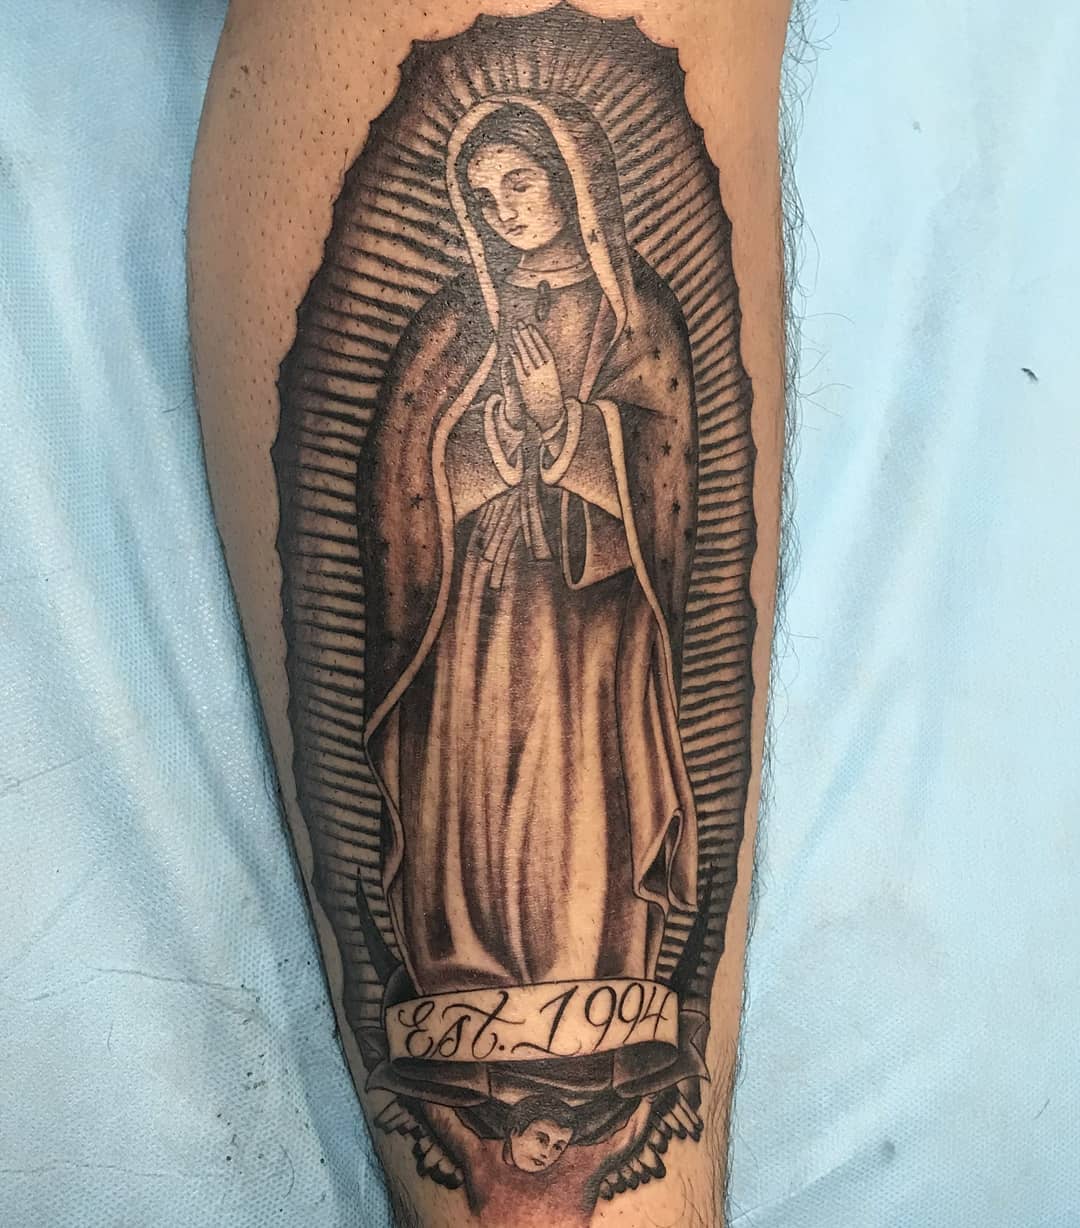 La Virgen de Guadalupe con una fecha de nacimiento.